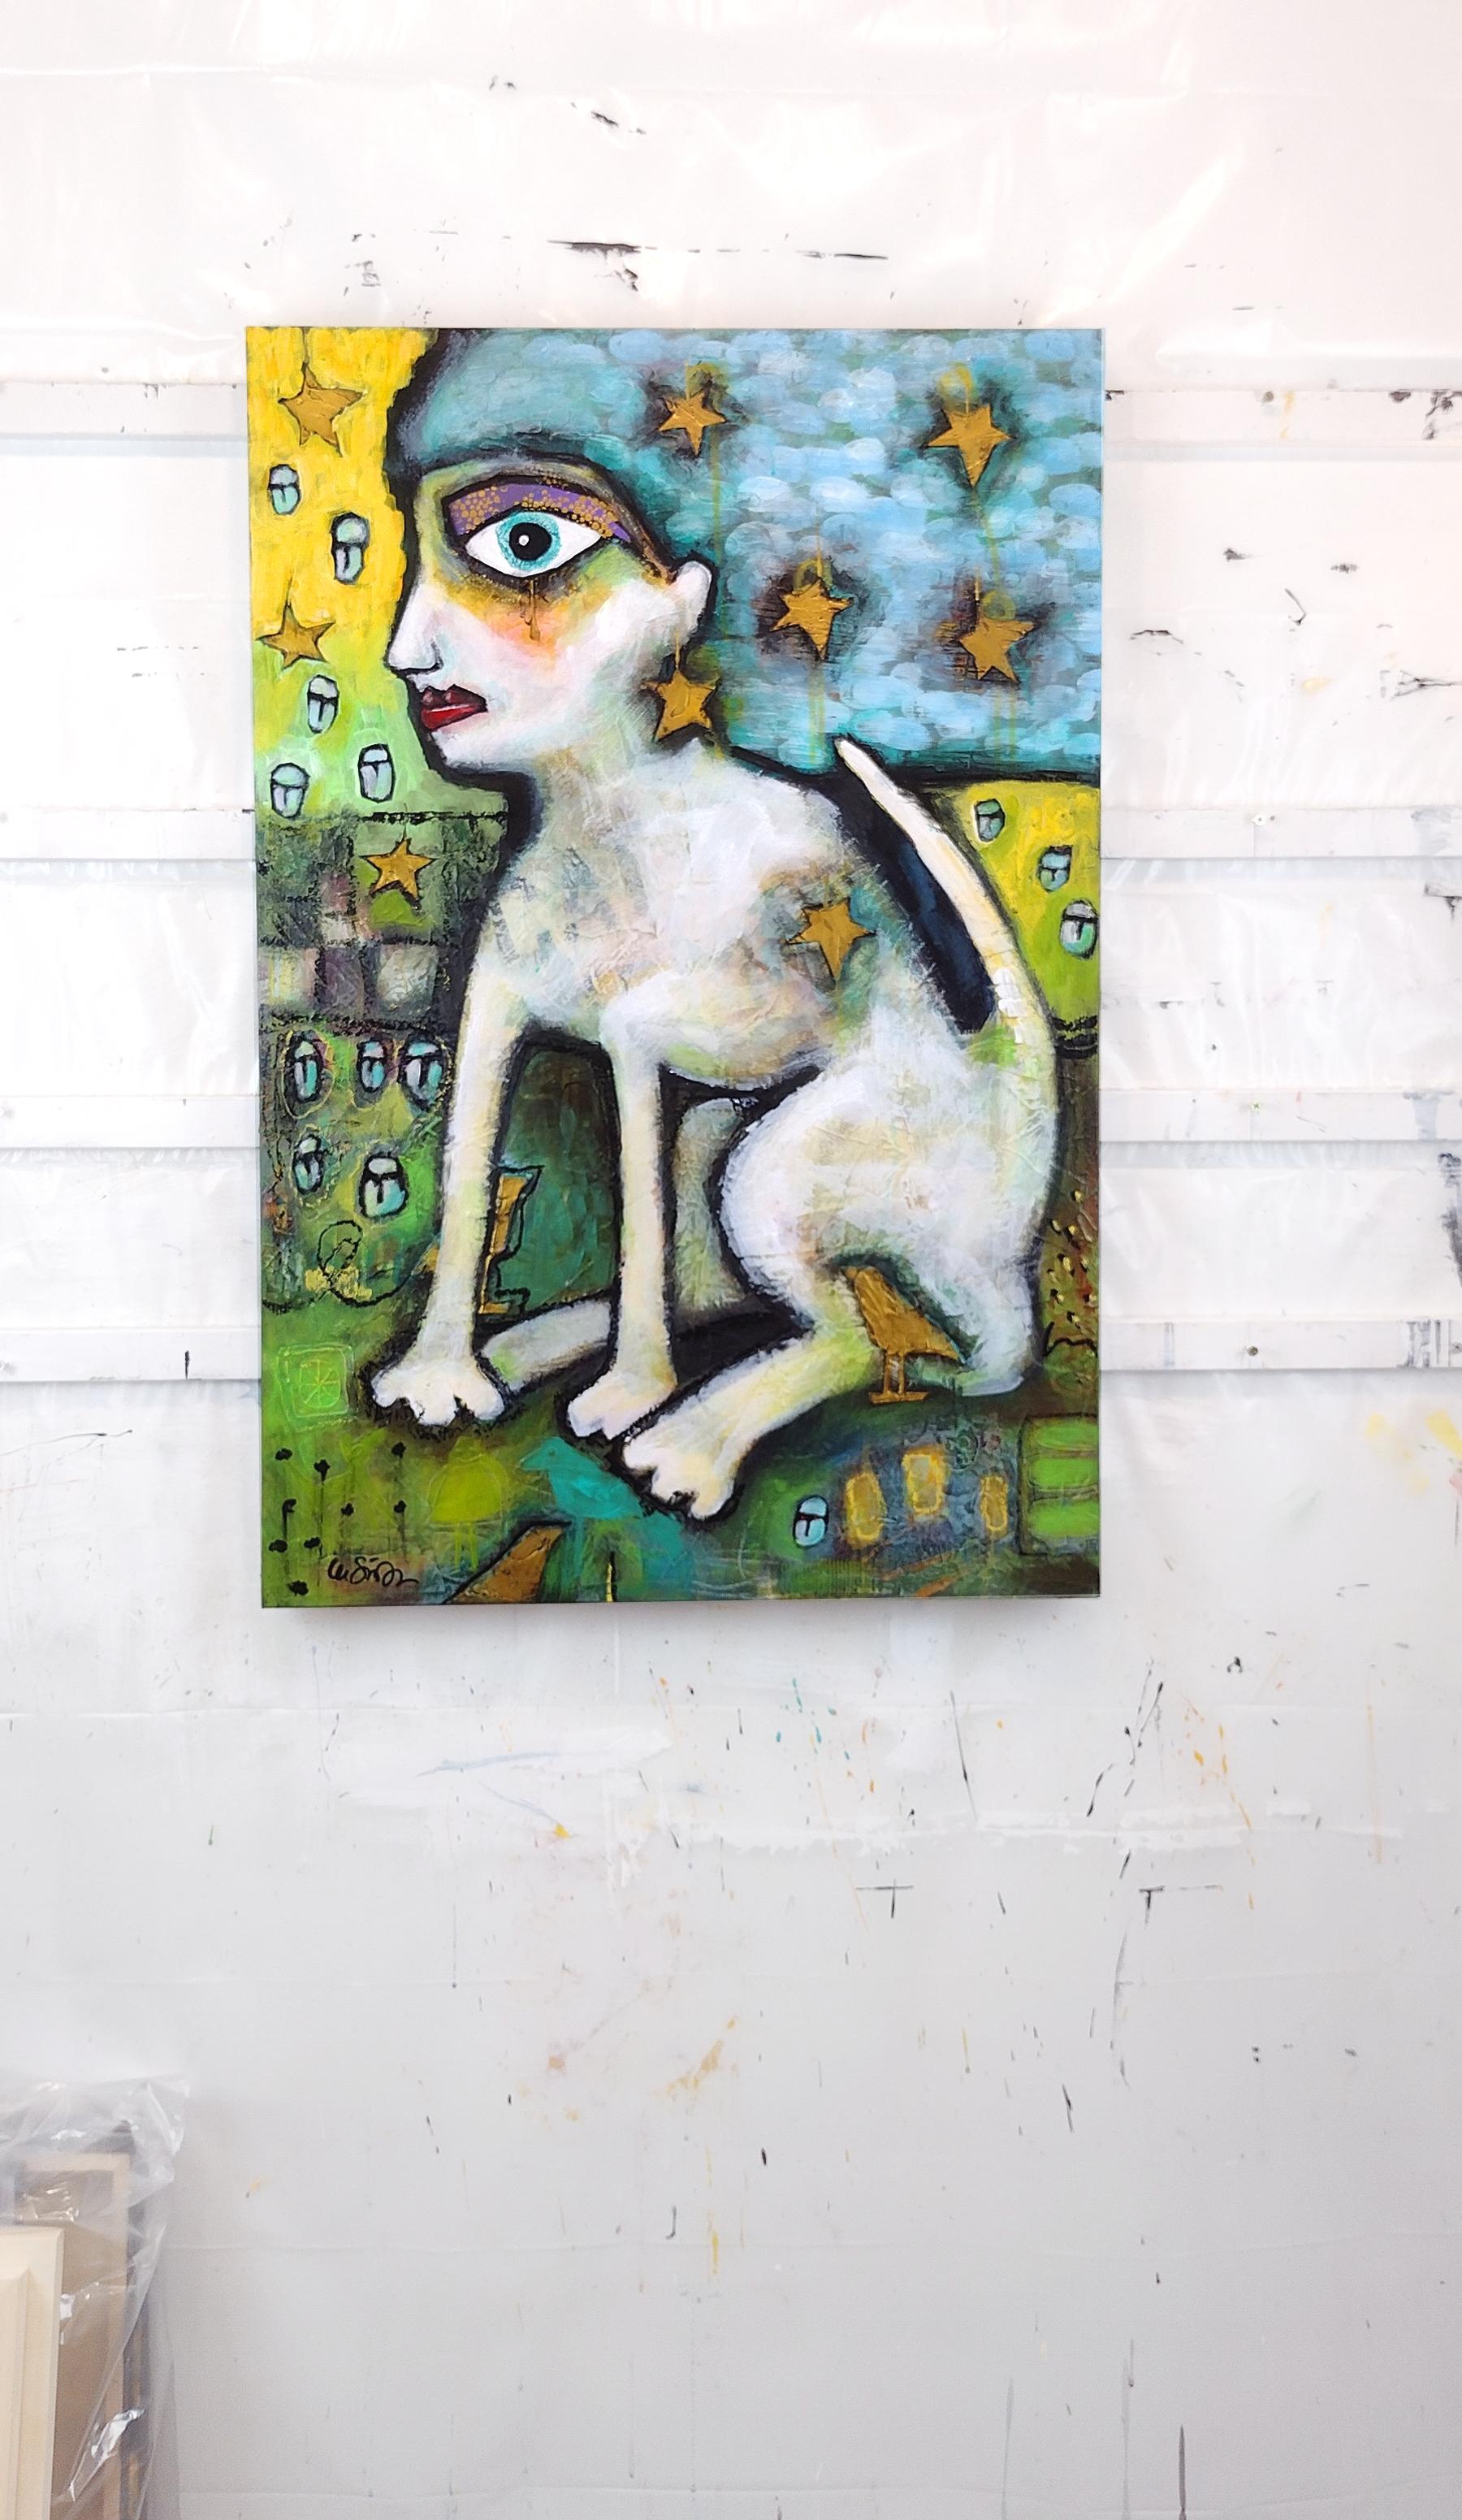 <p>Kommentare des Künstlers<br>Der Künstler Lee Smith bietet eine anthropomorphe Katzenfrau, die die Grenzen zwischen Mensch, Tier, Realität und Fantasie verwischt. Das Stück ruft eine positive, erbauliche und zutiefst kontemplative Stimmung hervor.